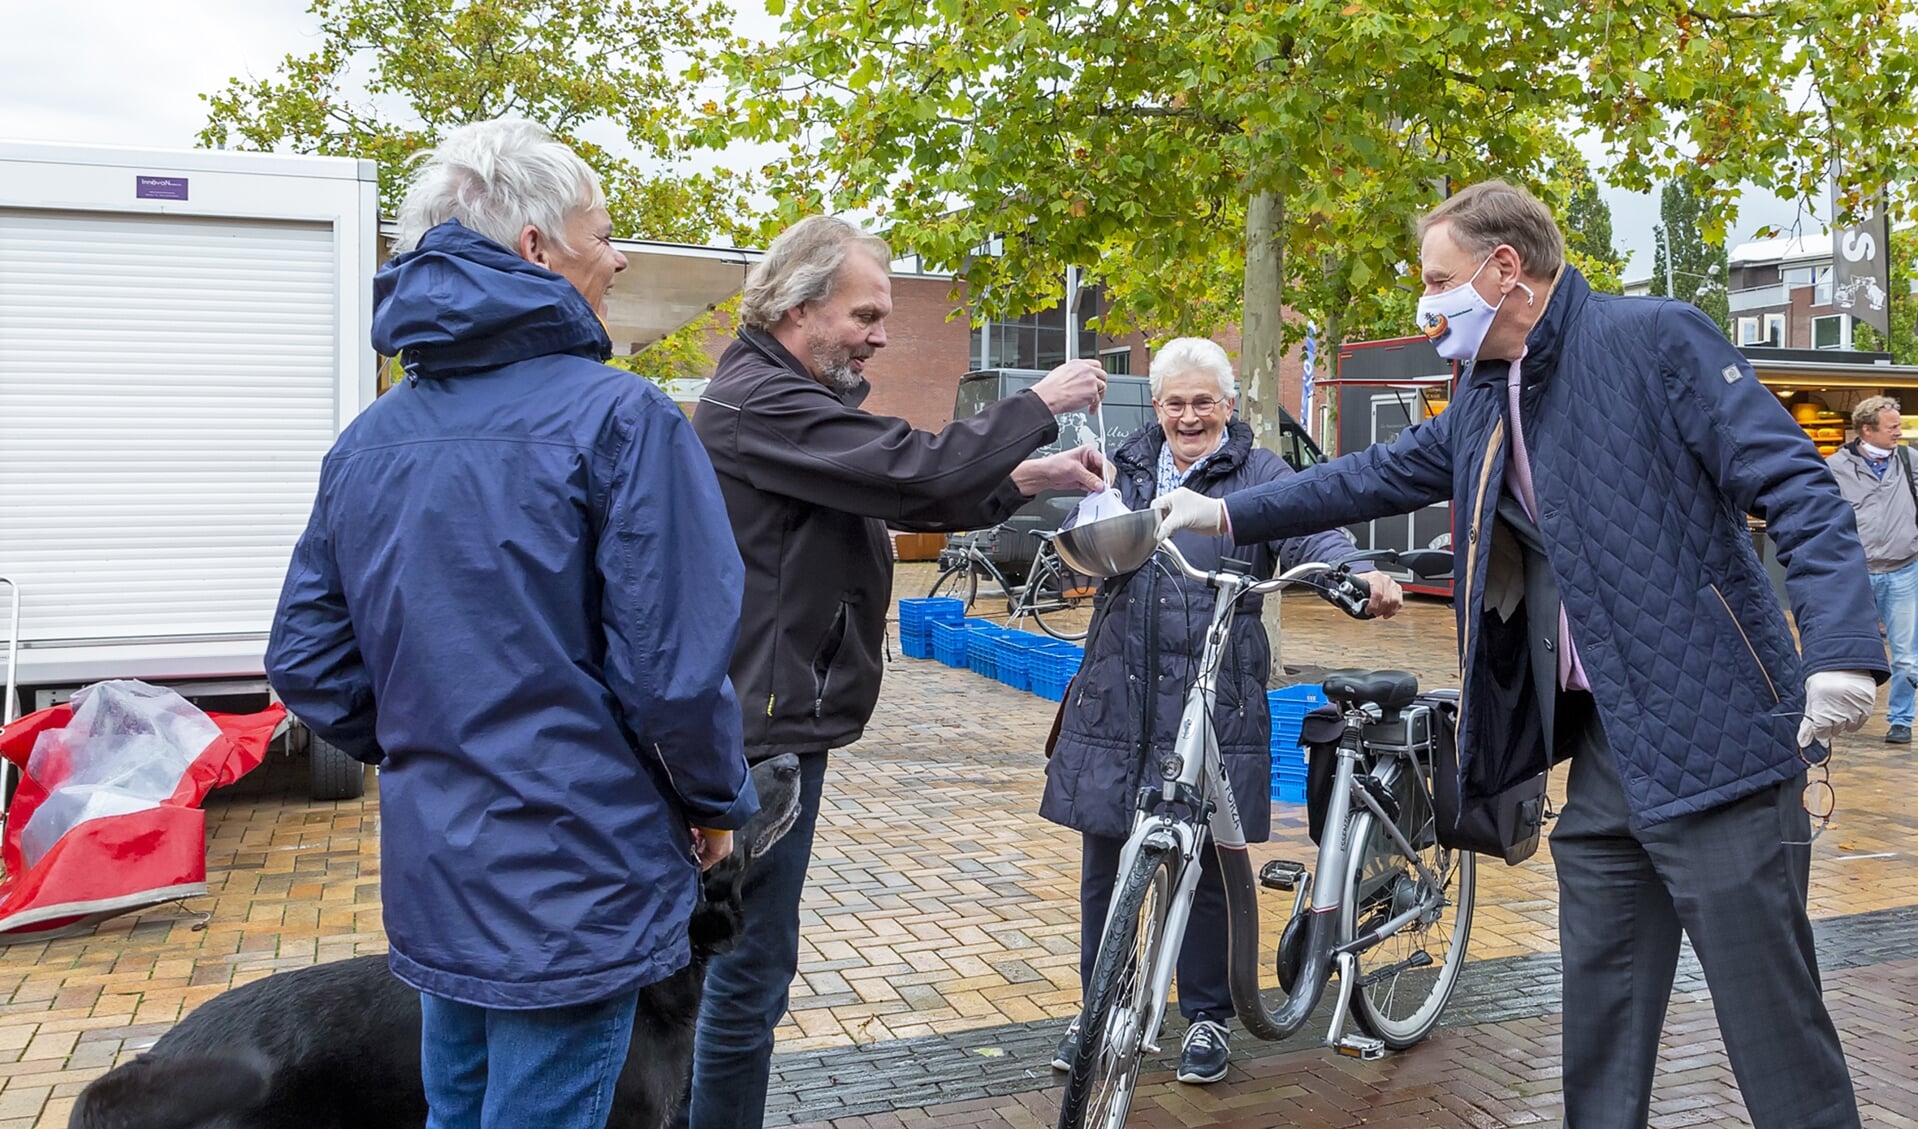 Vorige week deelden de burgemeester en wethouders mondkapjes uit op de markt in Bodegraven. De burgemeester pleit voor het verplicht dragen van mondkapjes in publieke binnenruimtes, winkels en supermarkten. 